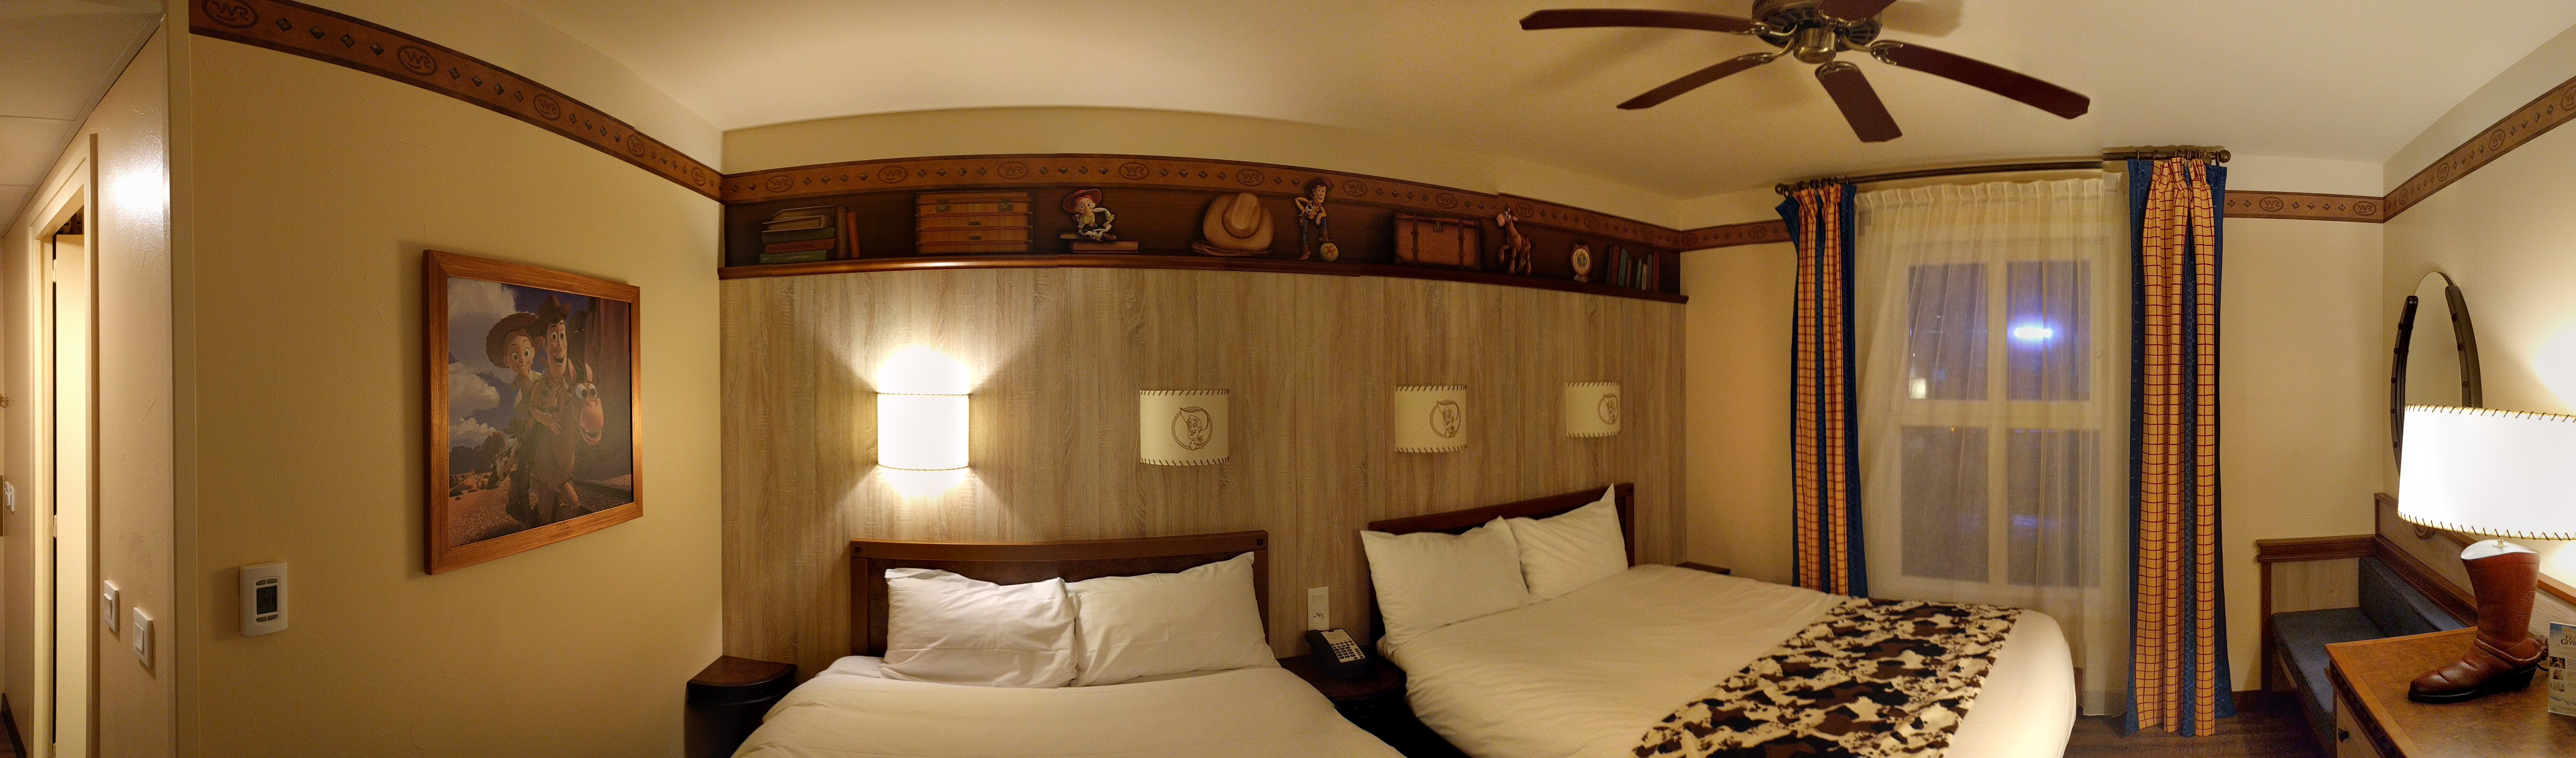 Hotel Cheyenne Texas Room Panoramic